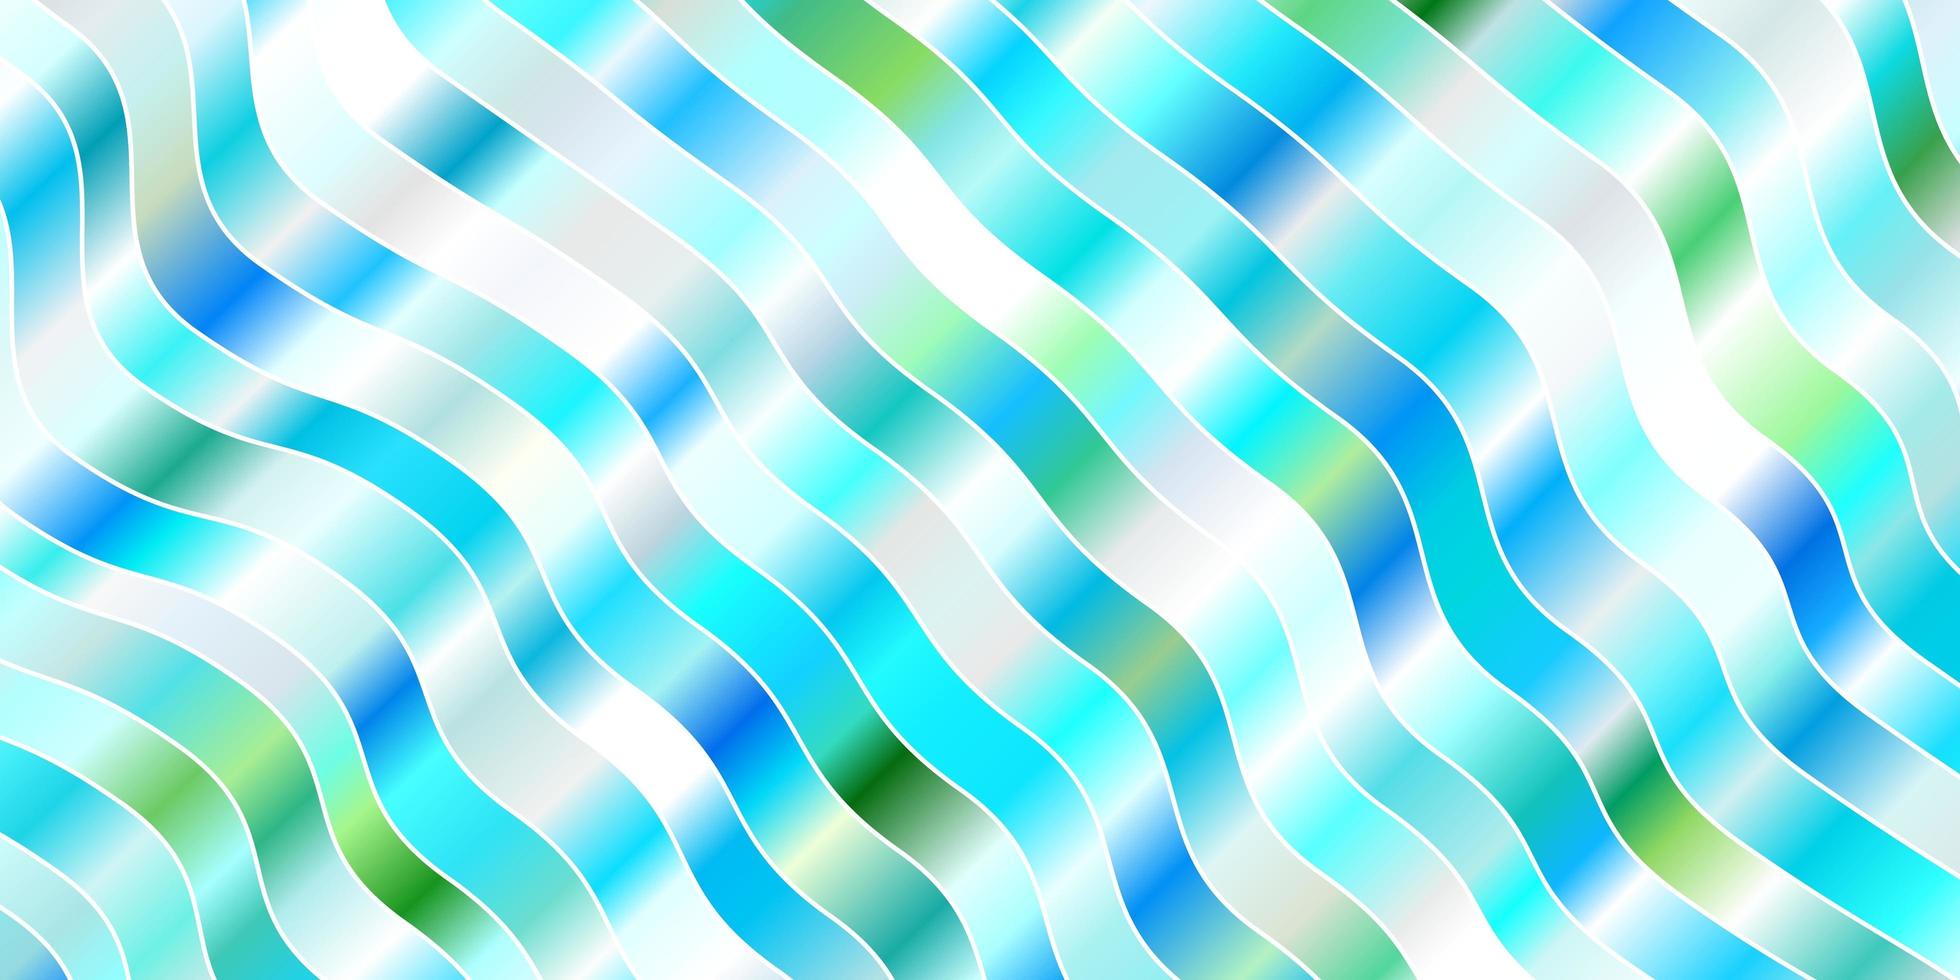 patrón de vector verde azul claro con líneas torcidas ilustración abstracta colorida con plantilla de curvas de degradado para su diseño de interfaz de usuario